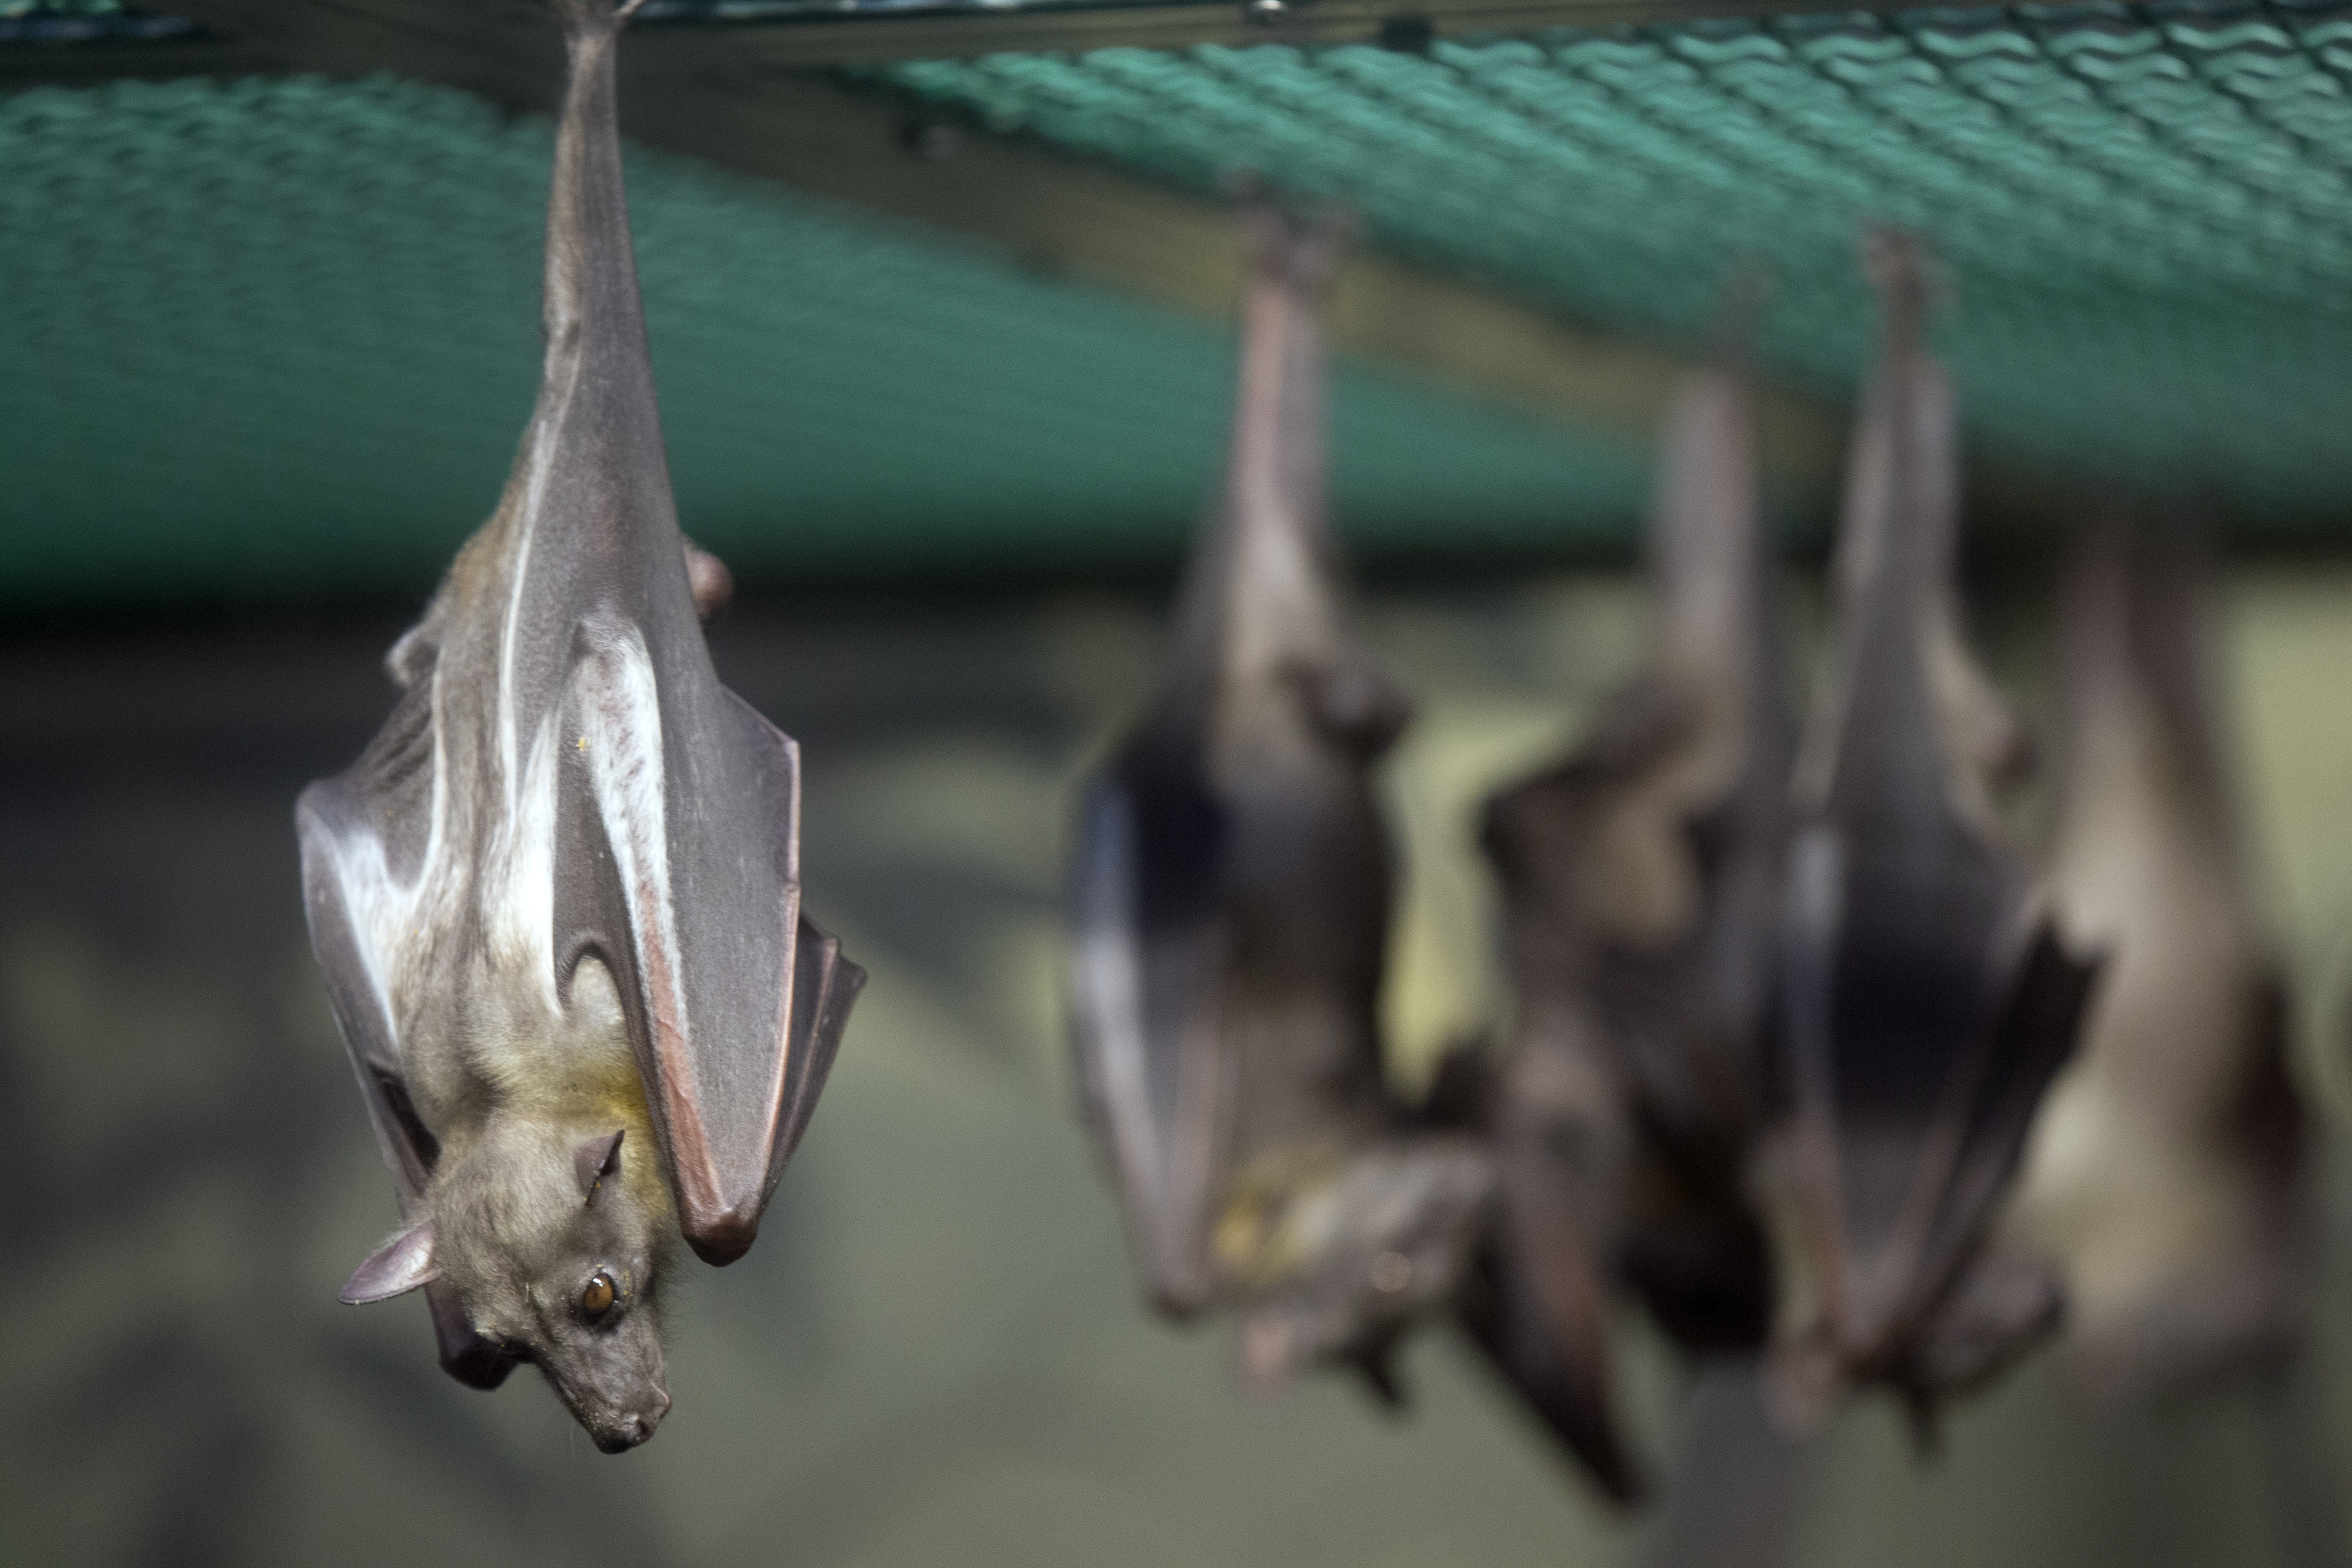 rabies in bats